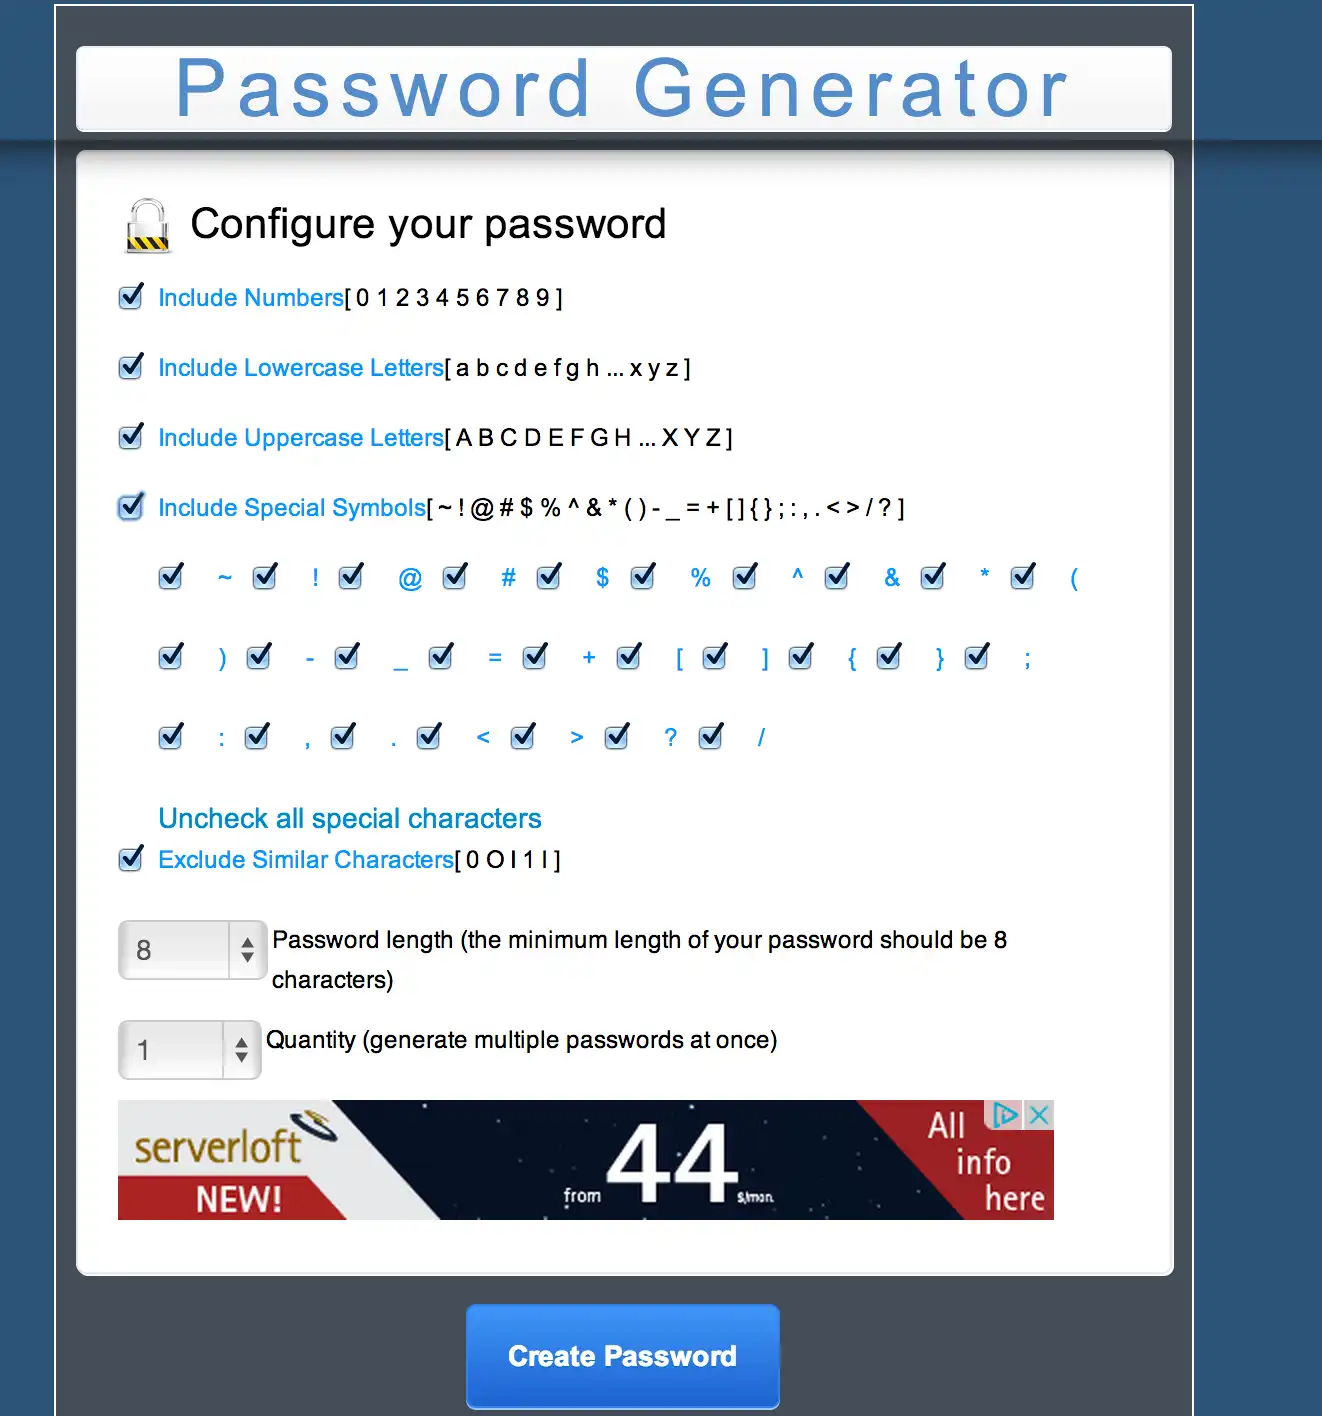 قم بتنزيل أداة الويب أو تطبيق الويب MC Password Generator